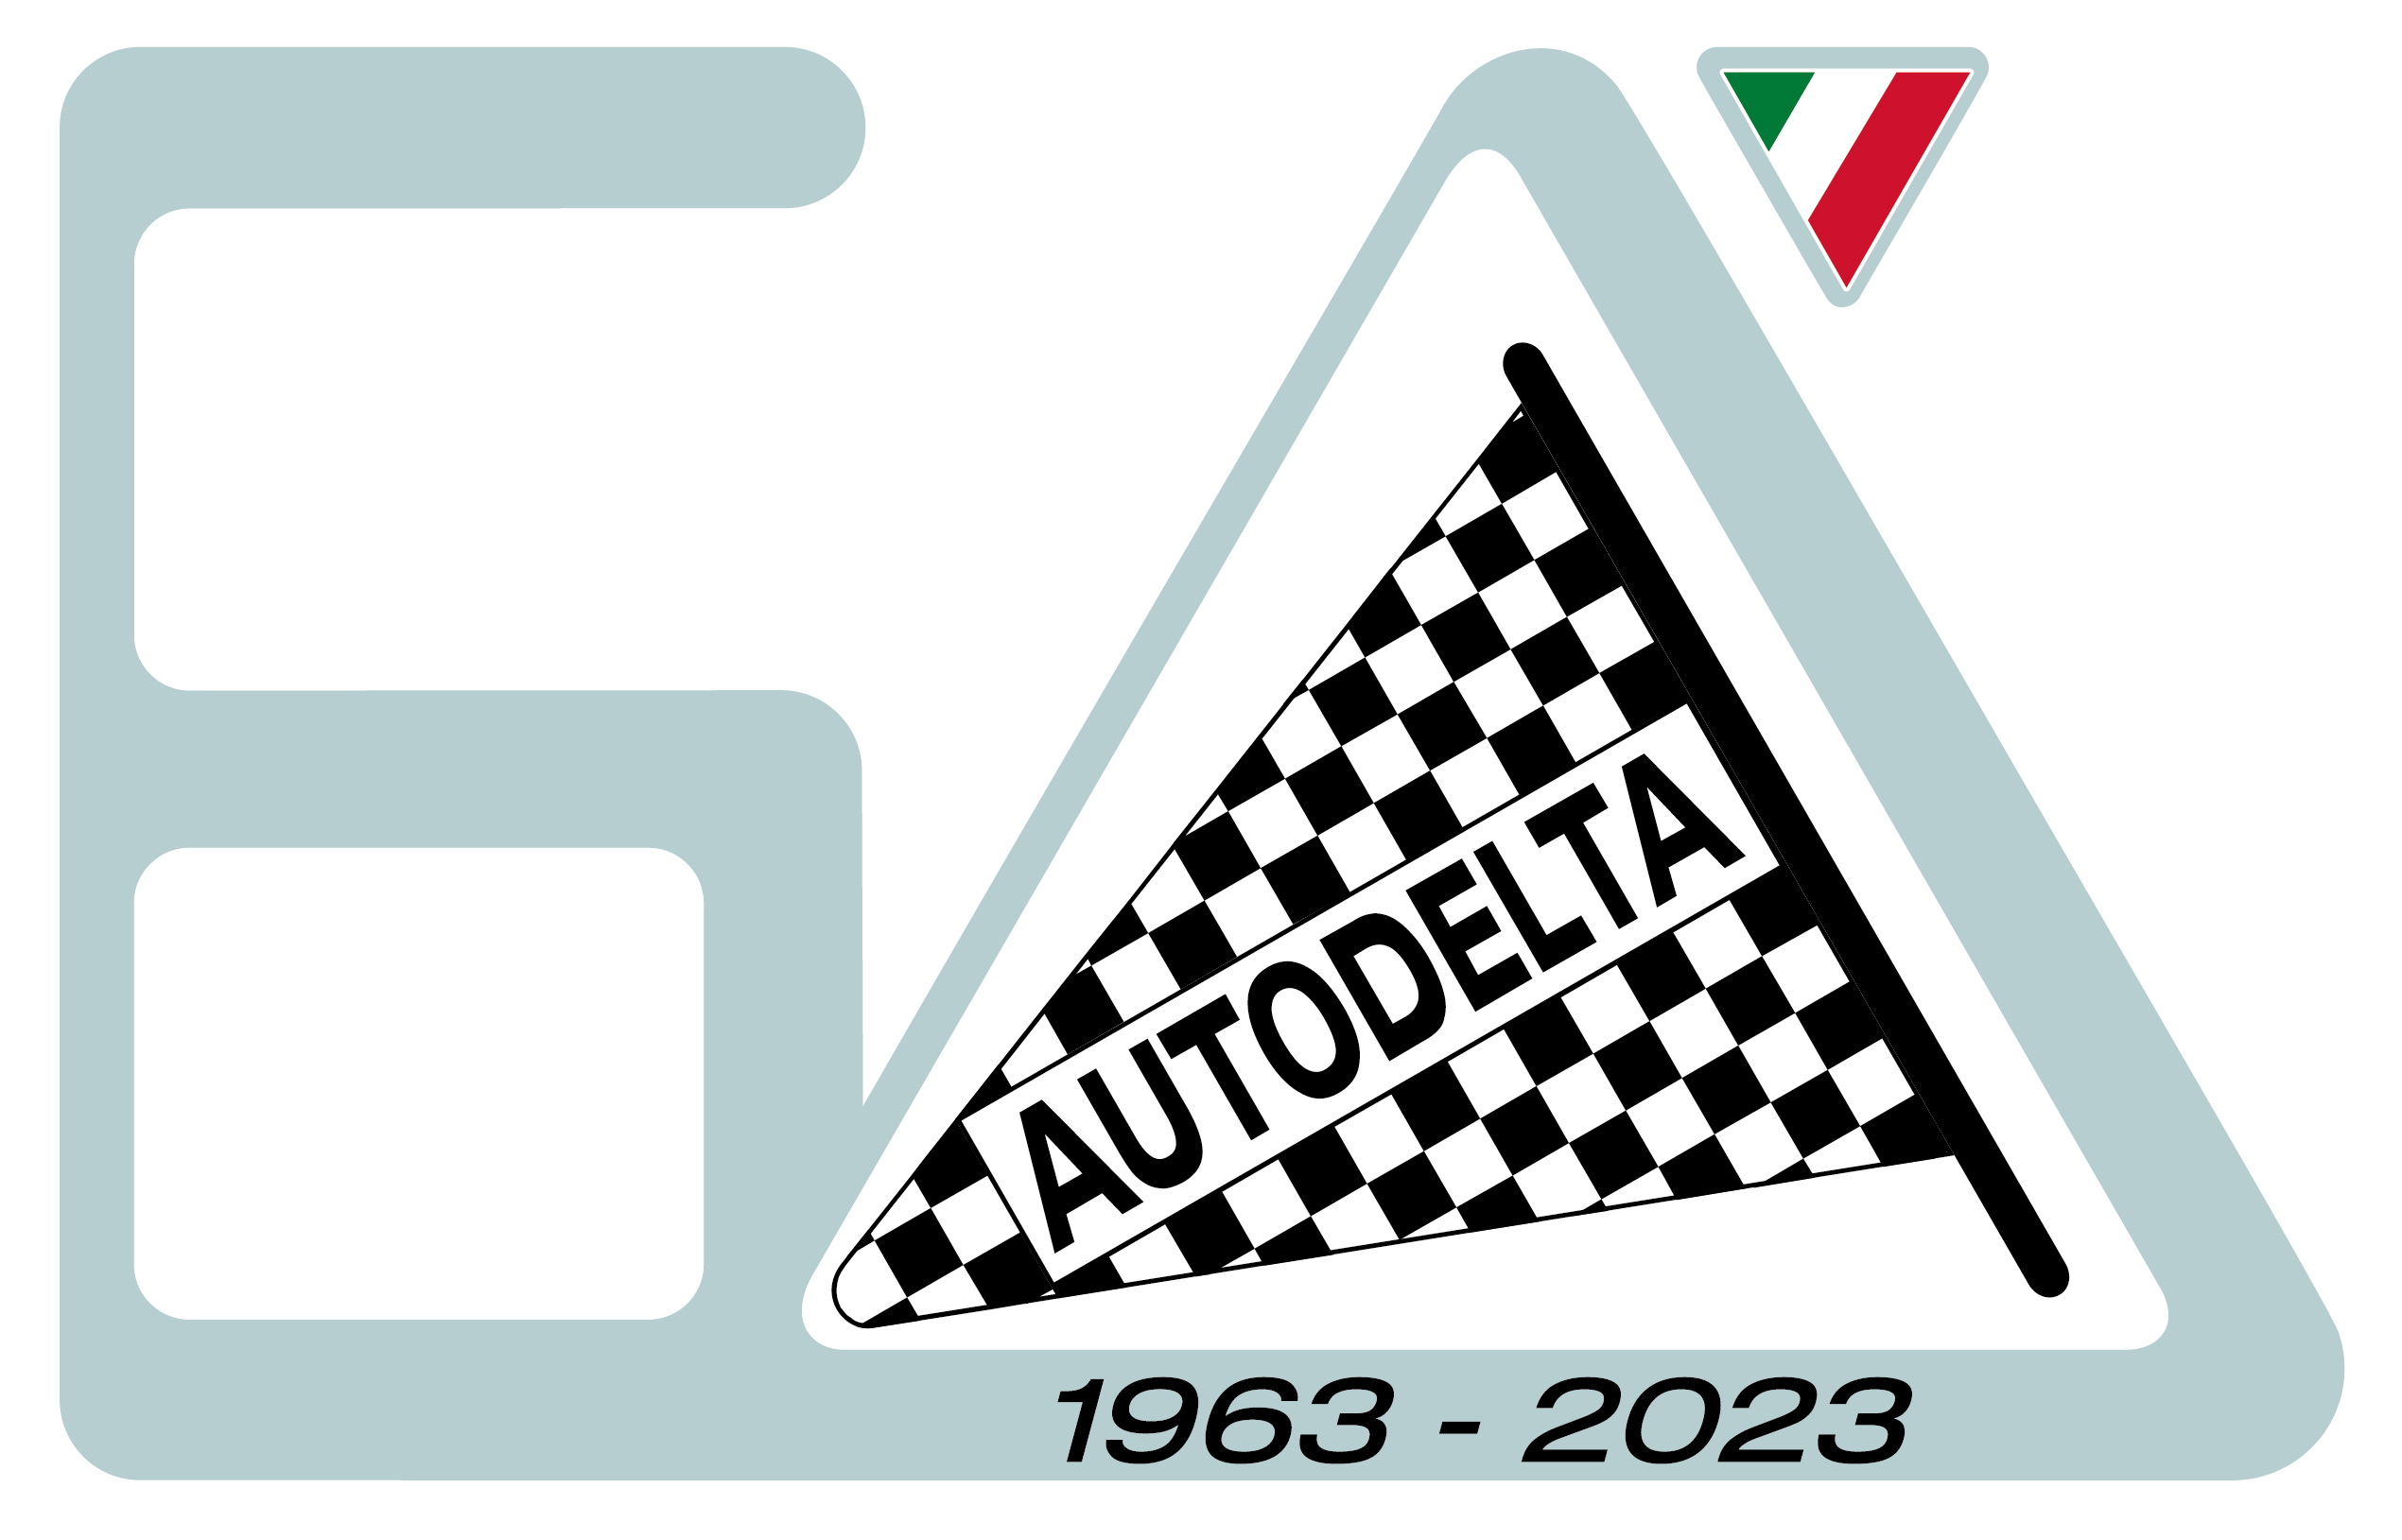 02 60autodelta 63e4b6c9c09cf 63e4d2c6aca19 Η Alfa Romeo γιορτάζει τις επετείους δύο θρυλικών ονομάτων